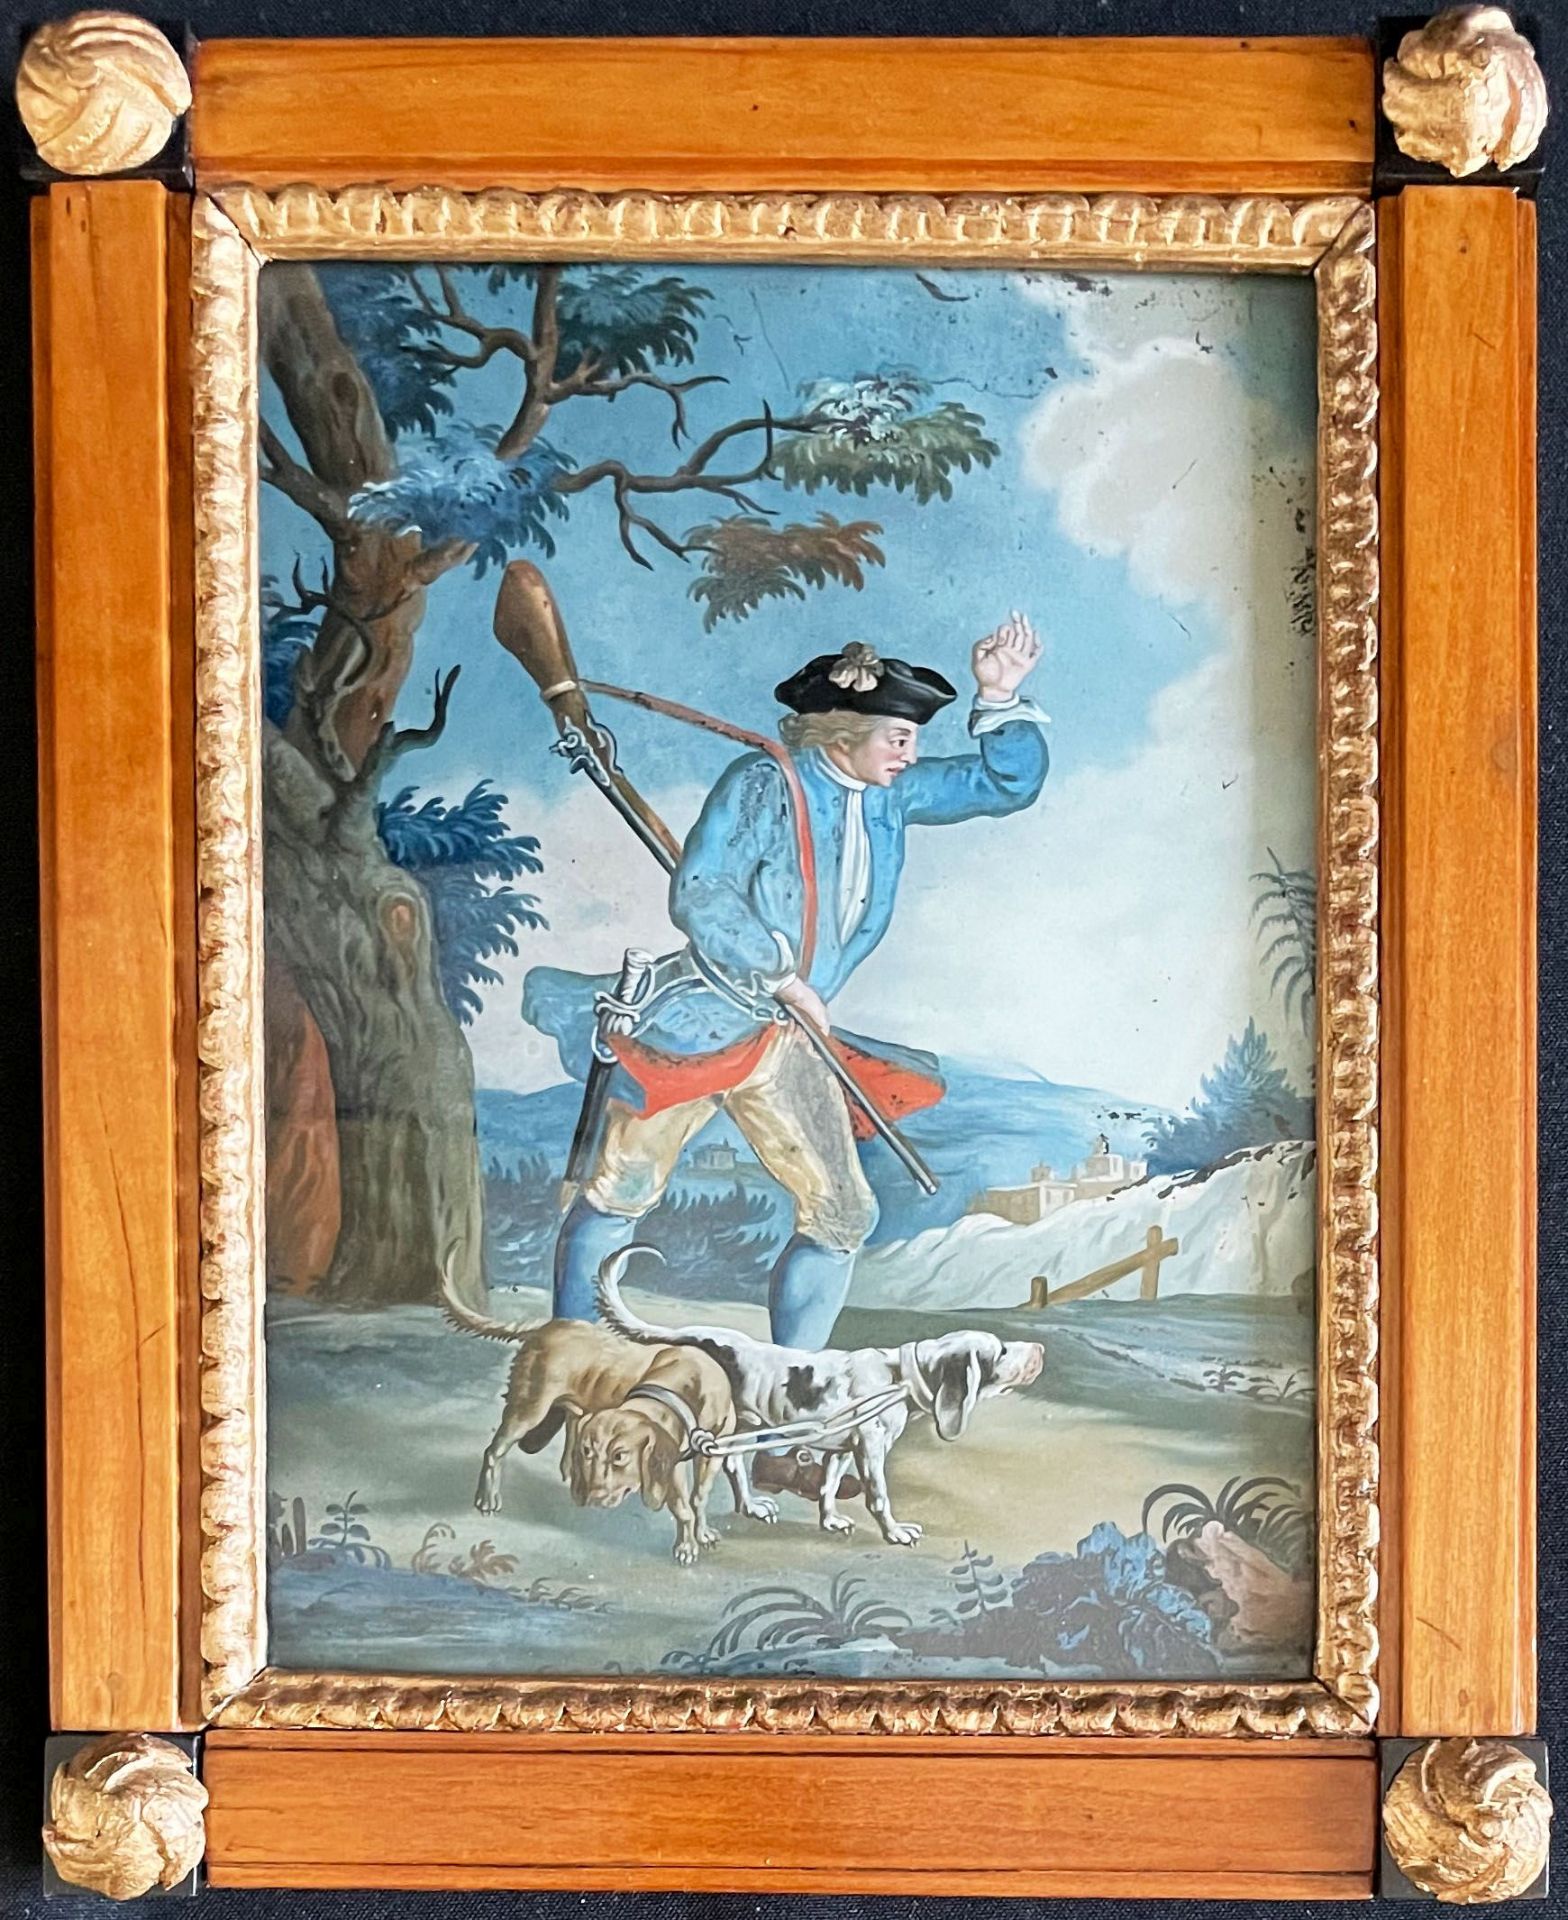 Hinterglasbild, süddeutsch, um 1780, Jäger mit Gewehr über der Schulter und Dolch am Gürtel mit zwei